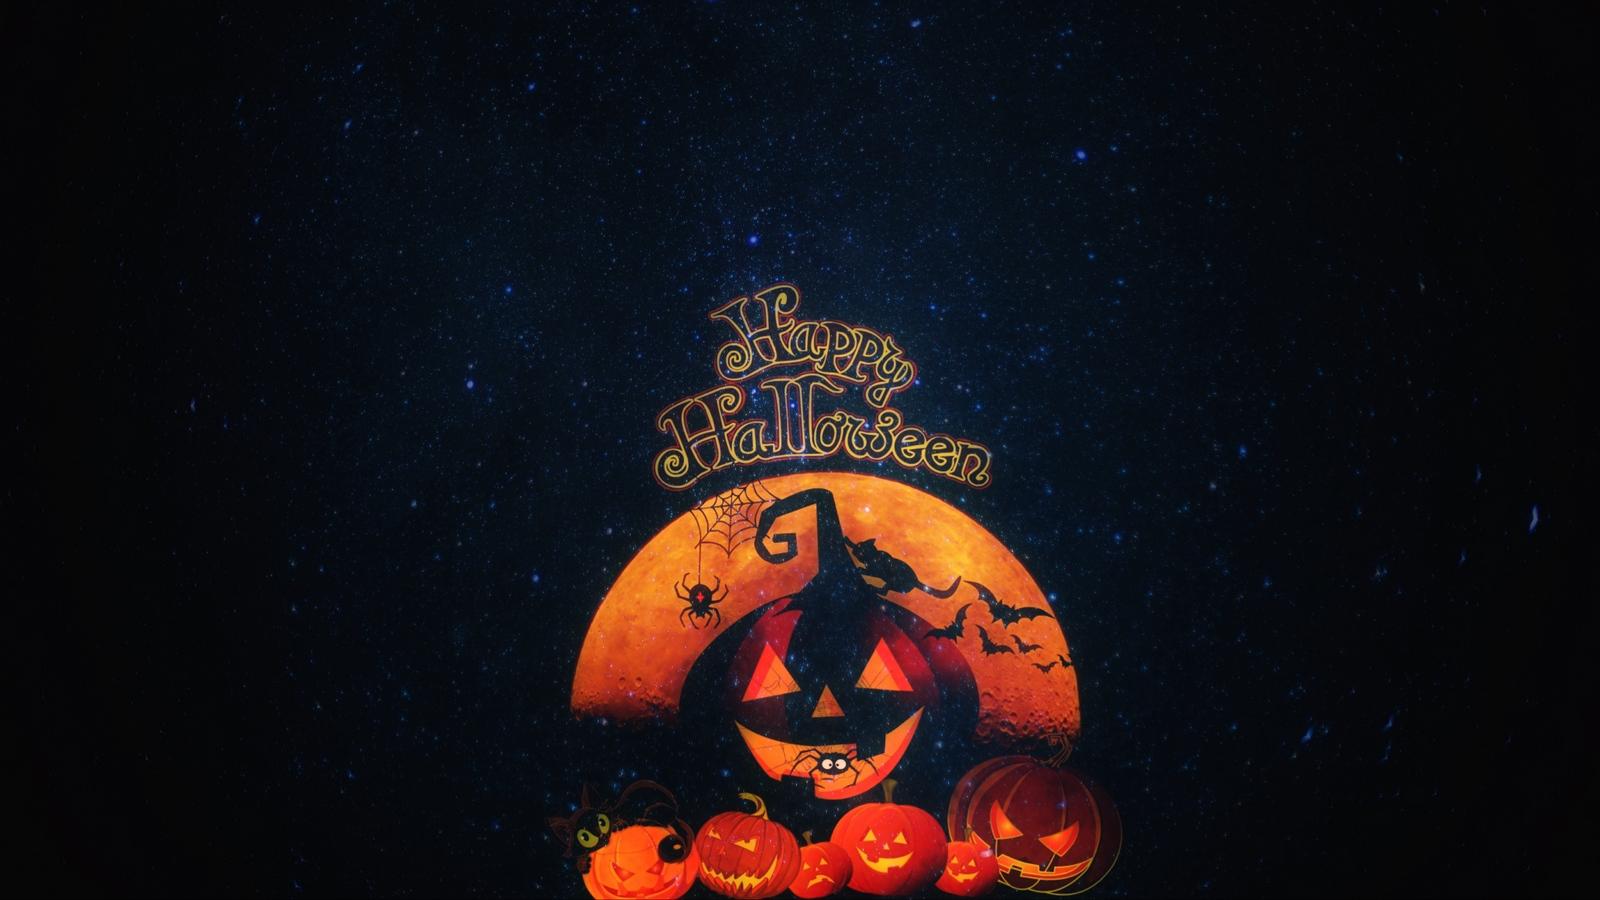 Download wallpaper 1600x900 halloween, pumpkin, autumn, cat, holiday widescreen 16:9 HD background